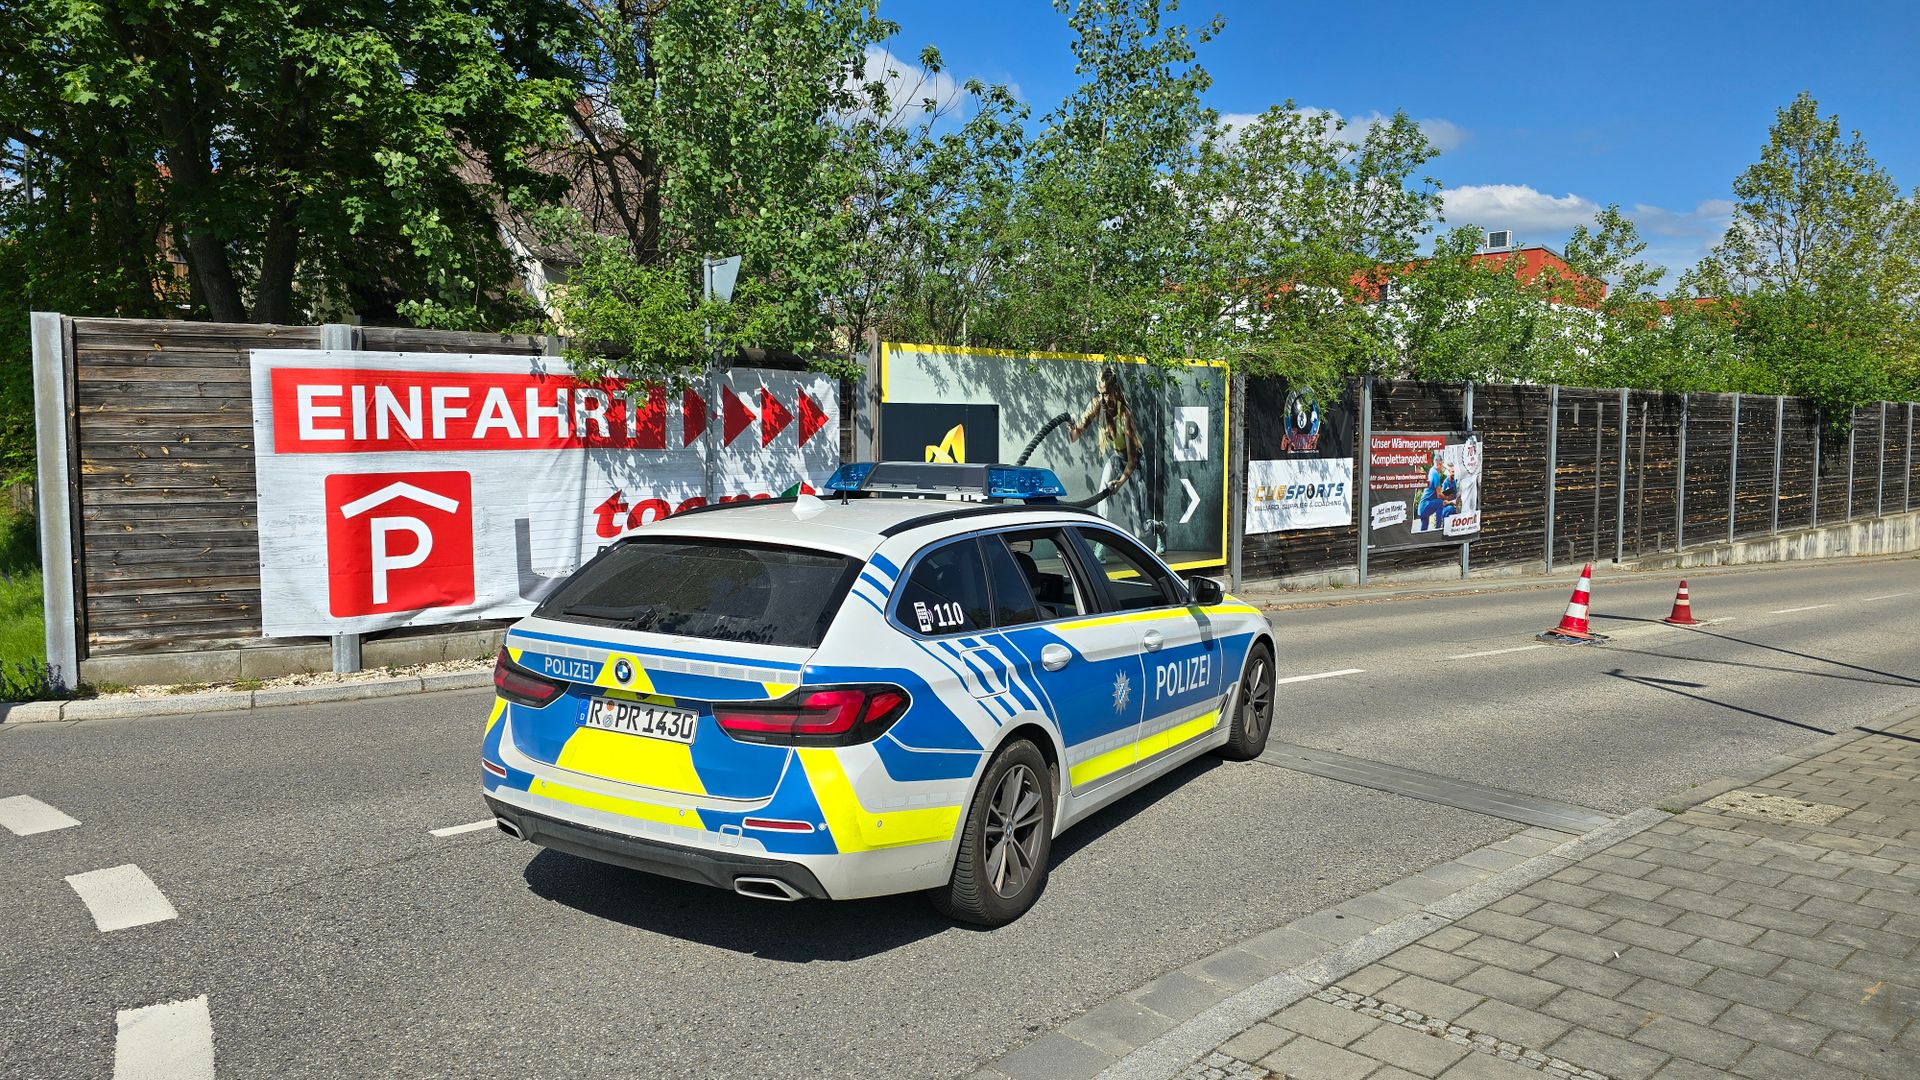 regensburg: tote in kofferraum entdeckt, kriminalpolizei ermittelt